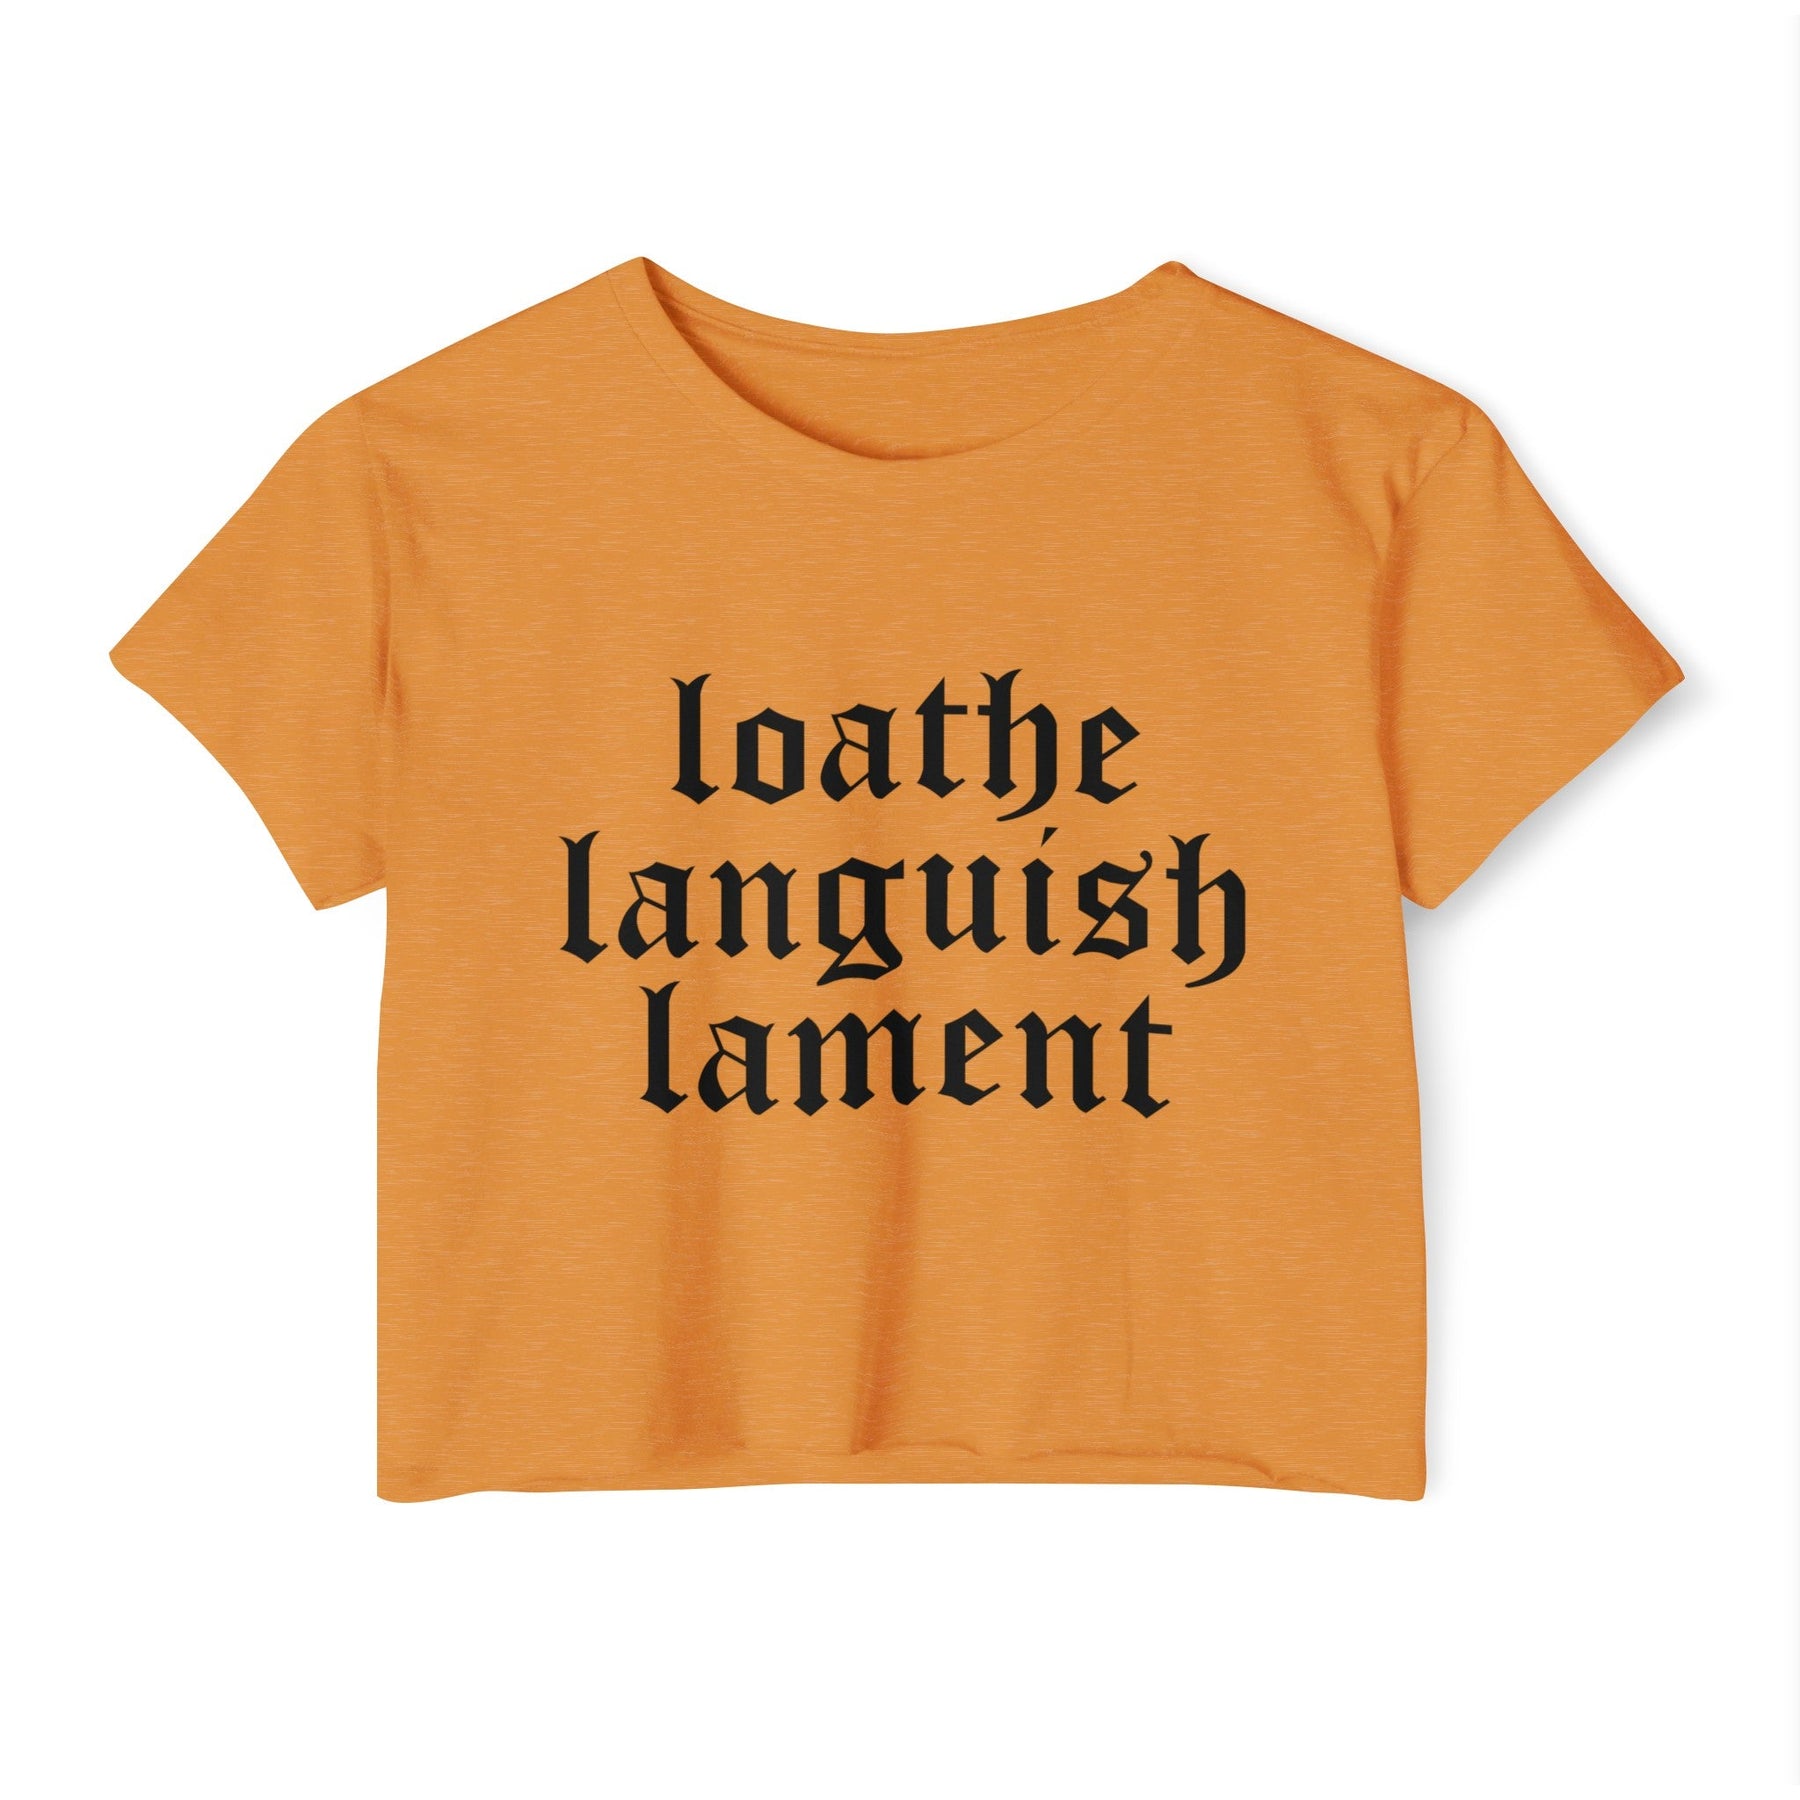 Loathe Languish Lament Women's Lightweight Crop Top - Goth Cloth Co.T - Shirt14922442453456470113